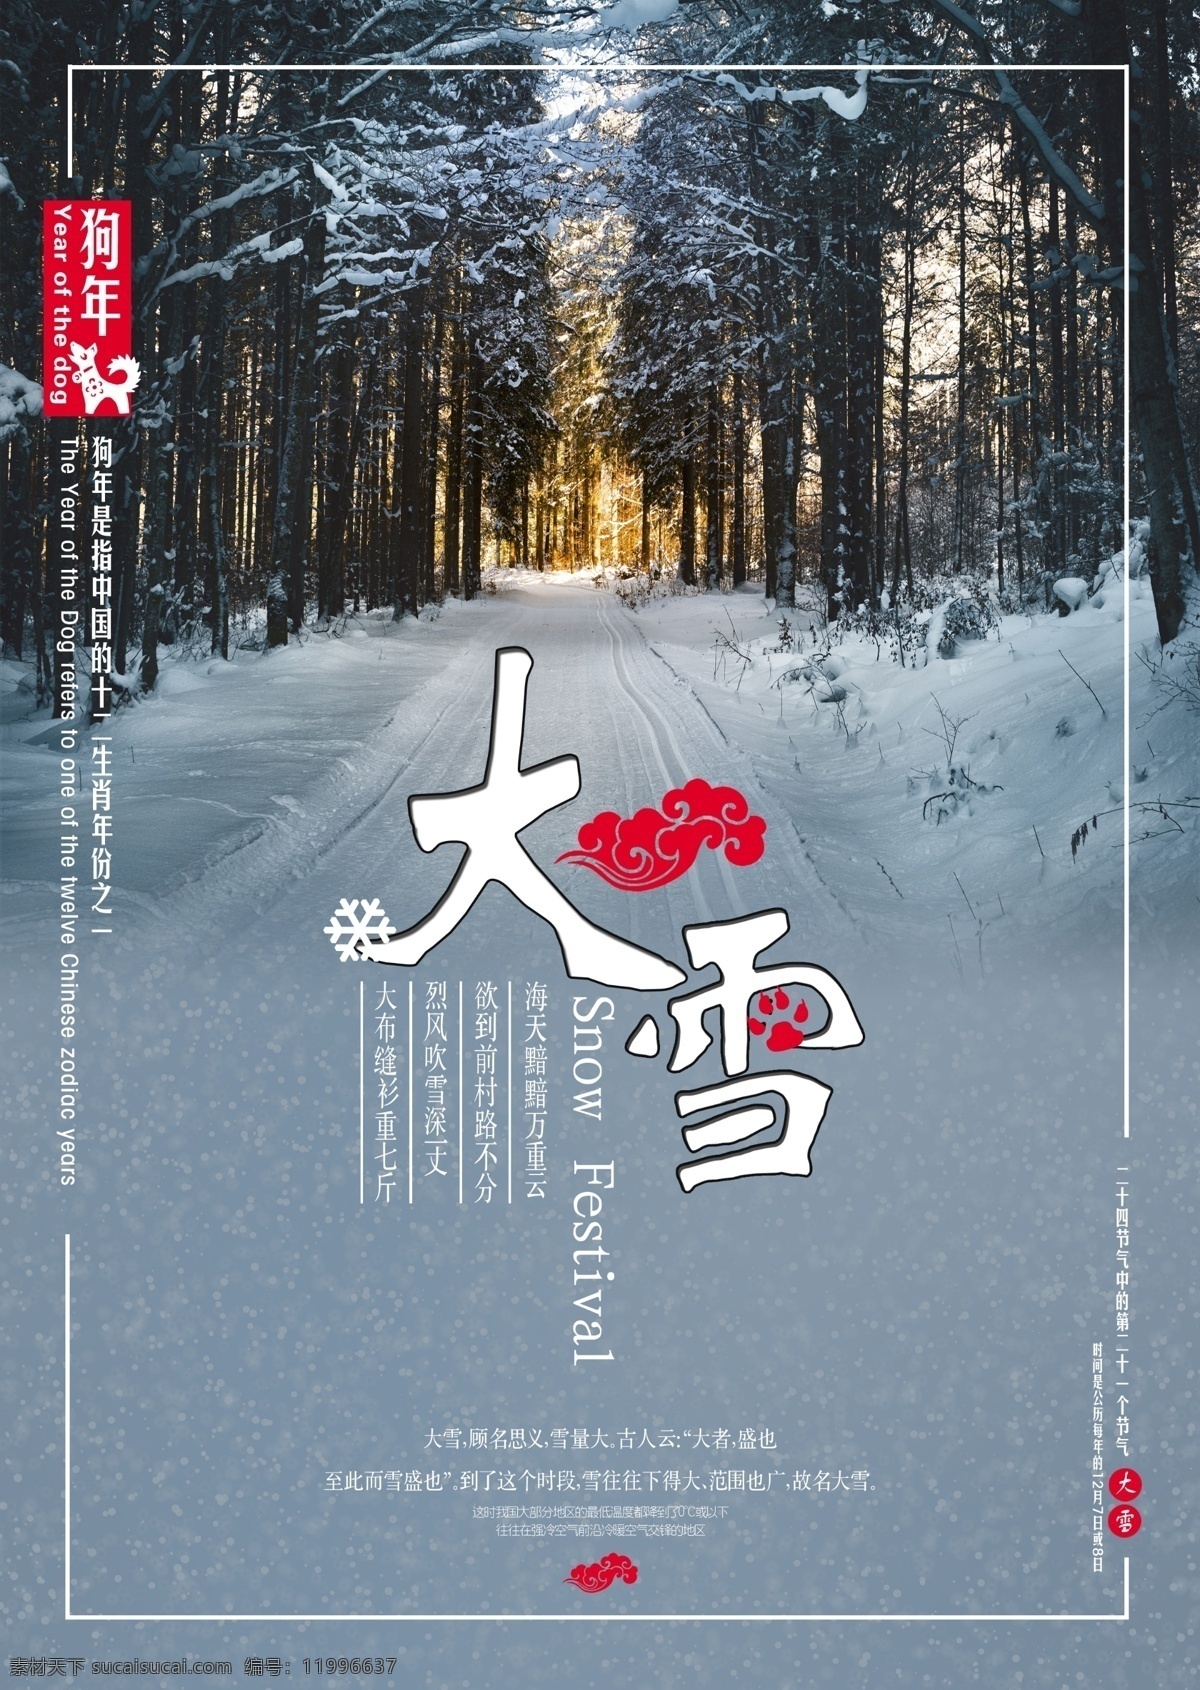 中国 风 二十四节气 传统 大雪 海报 中国风 中国传统 传统文化 节气 节气海报 大雪节气 小雪 大雪海报 中国节气